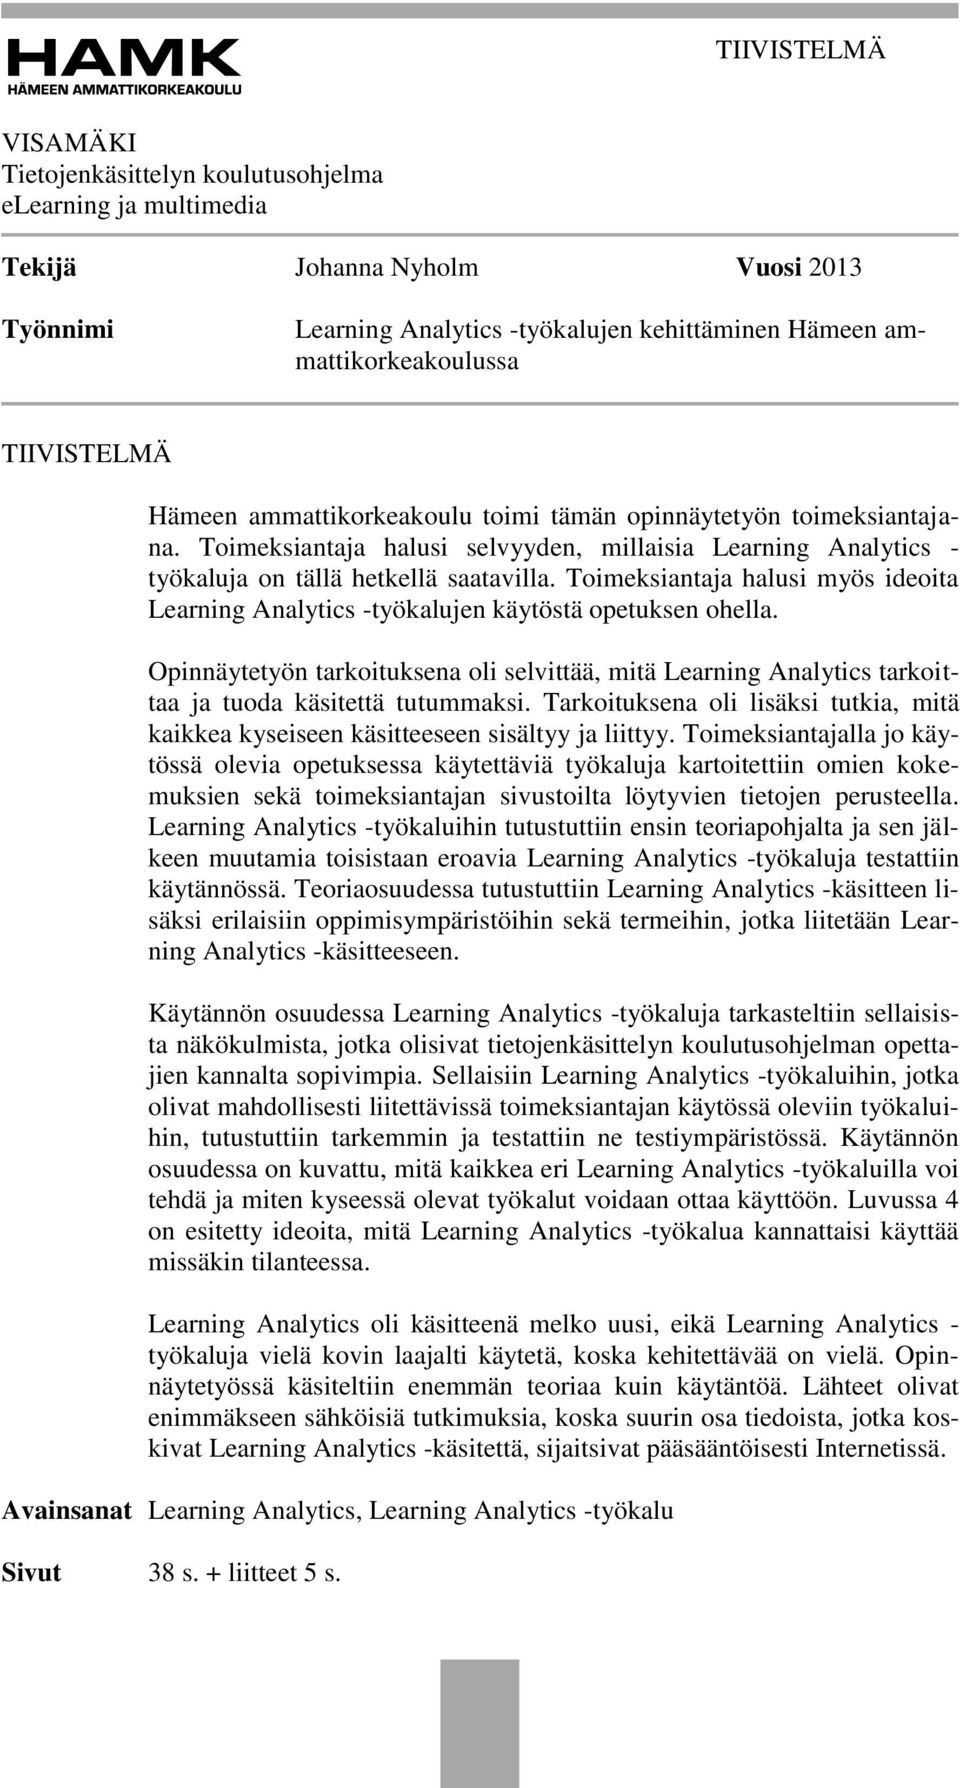 Toimeksiantaja halusi myös ideoita Learning Analytics -työkalujen käytöstä opetuksen ohella.